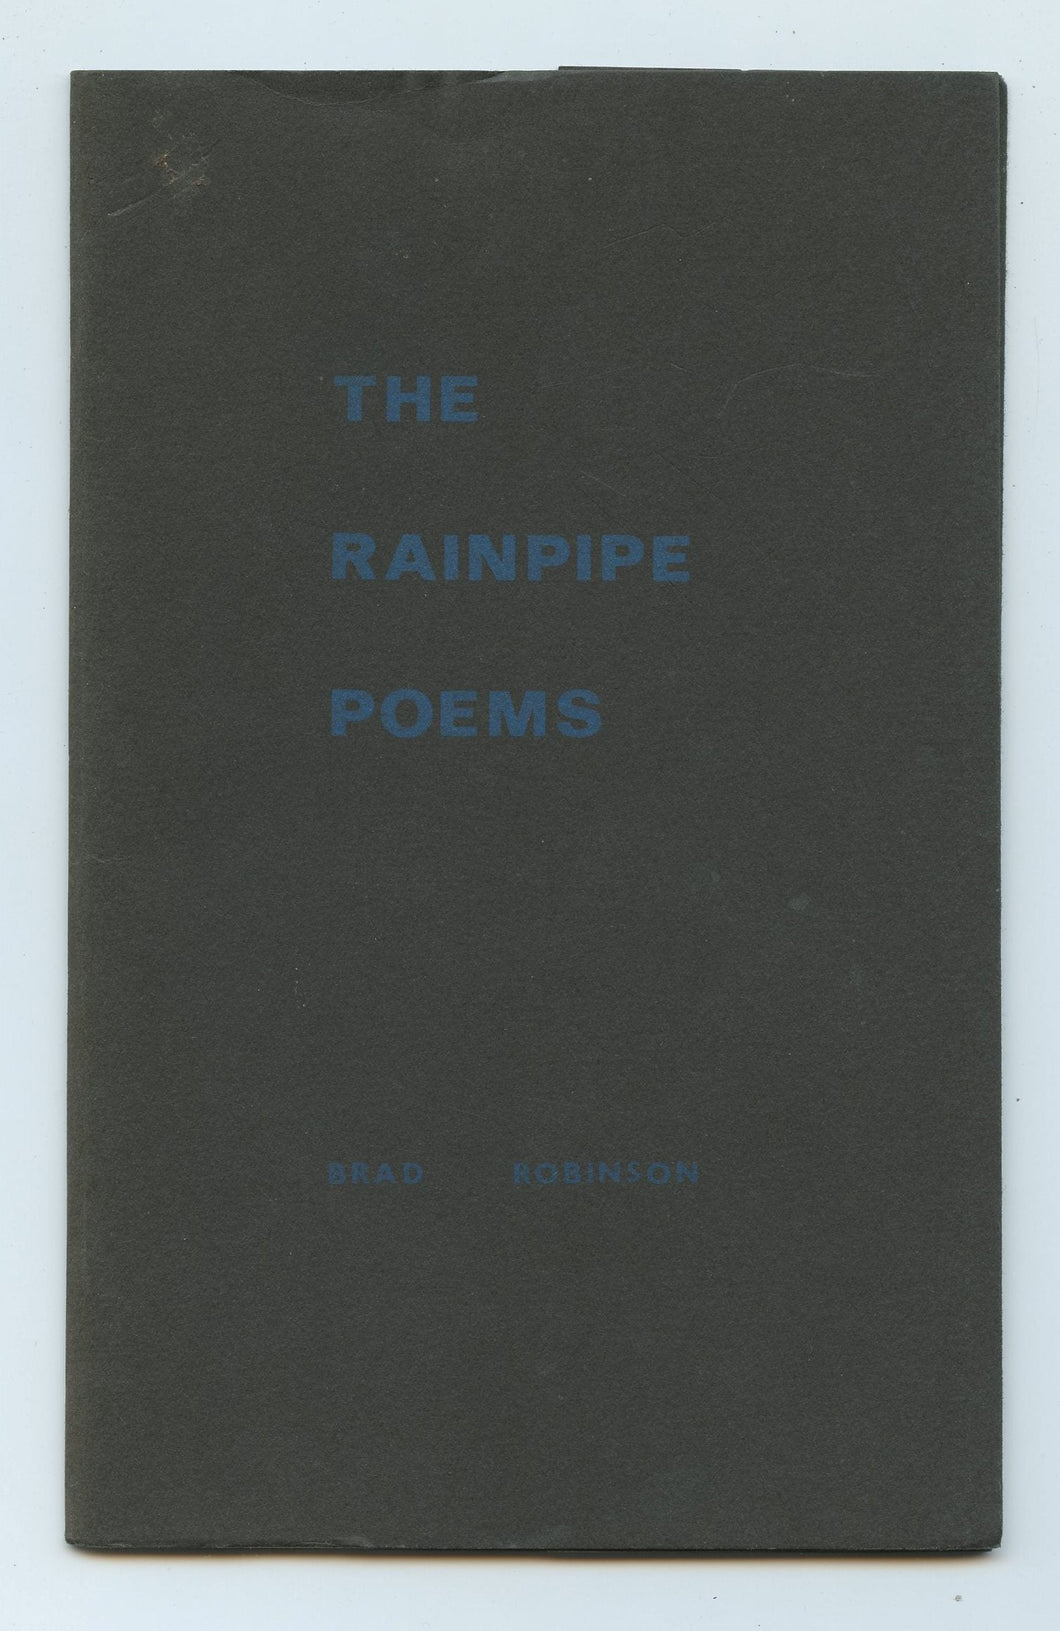 The Rainpipe Poems